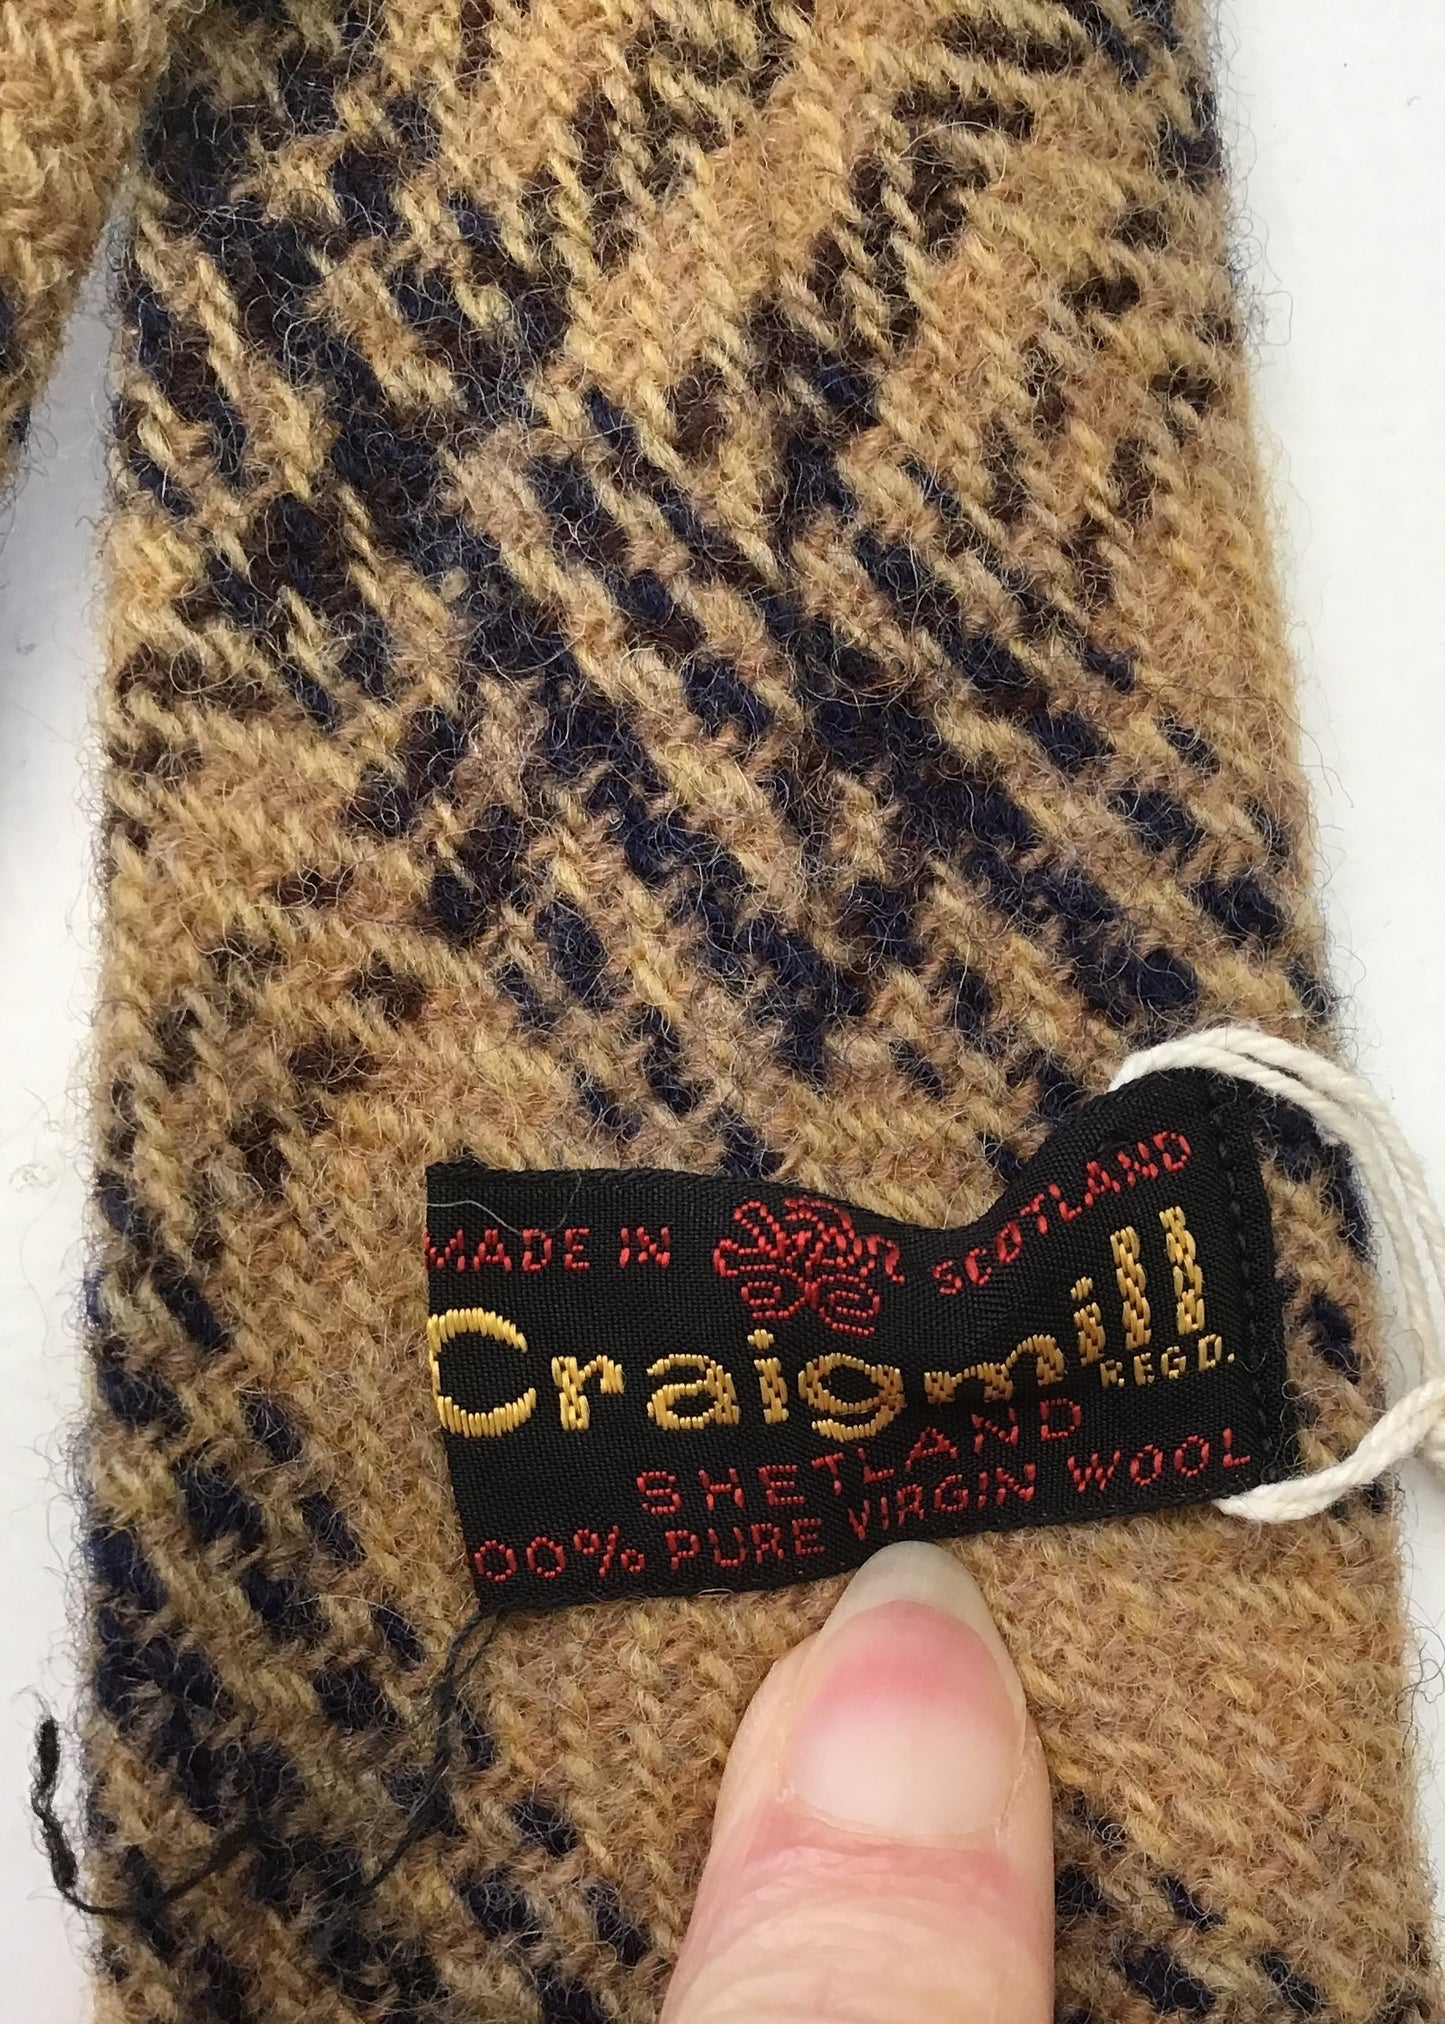 Vintage Beige Chunky Wool Tweed Neck Tie • Craigmill